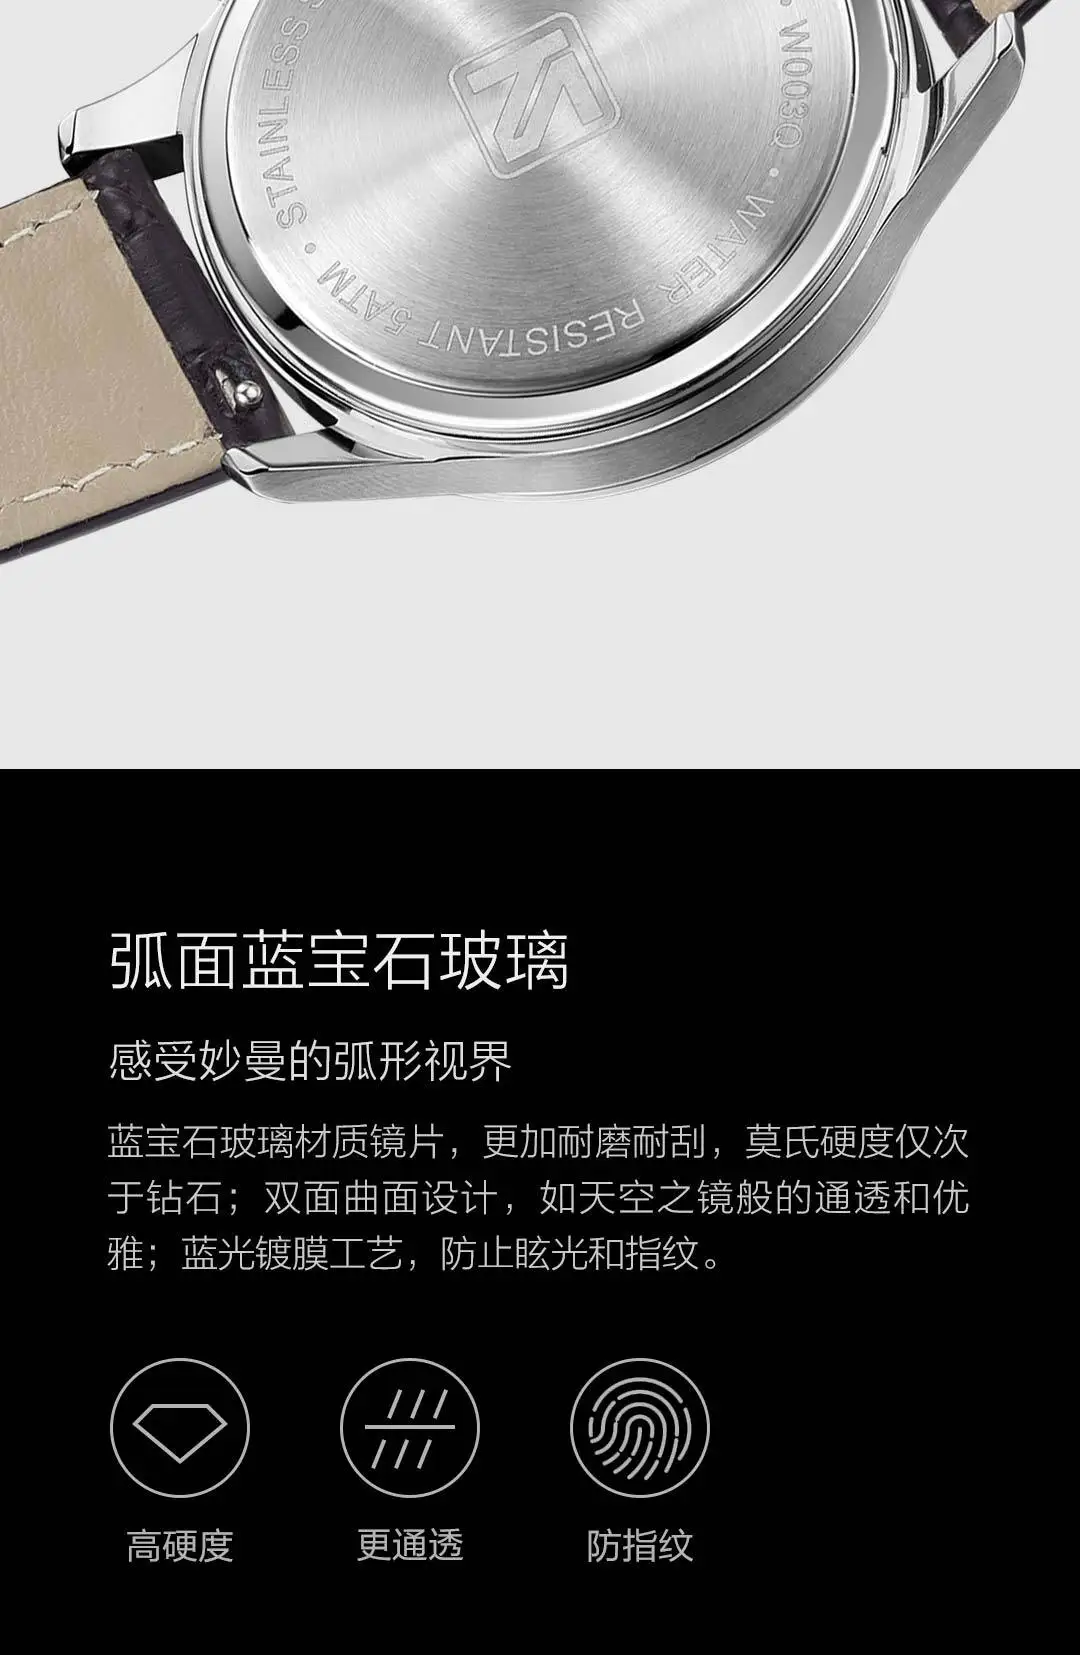 Xiaomi Youpin TwentySeventeen светильник Бизнес Кварцевые часы двойной часовой пояс циферблат пластины высокое качество элегантность унисекс 2 цвета